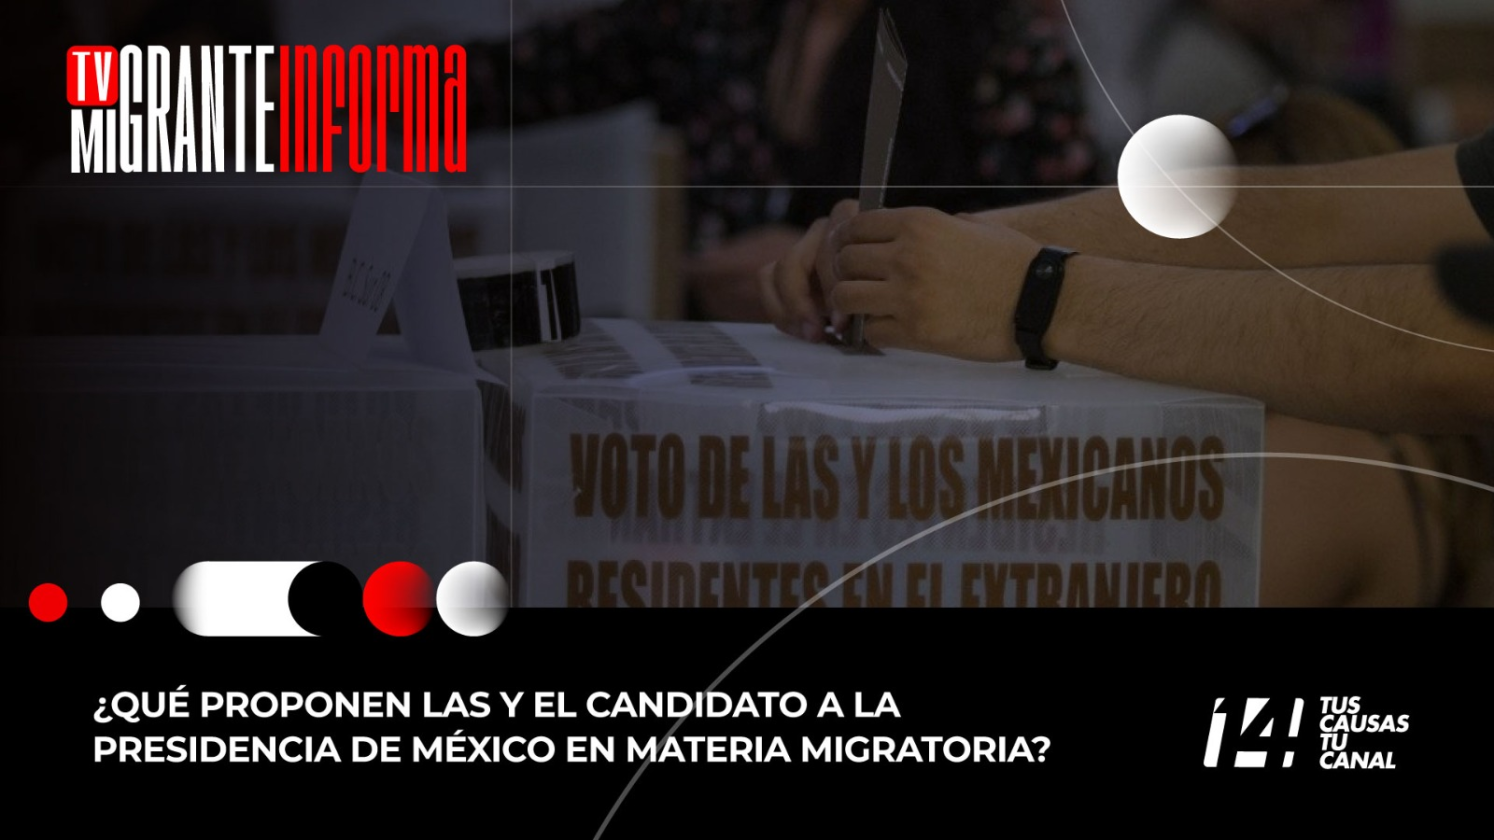 ¿Qué proponen las y el candidato a la presidencia de México en materia migratoria?